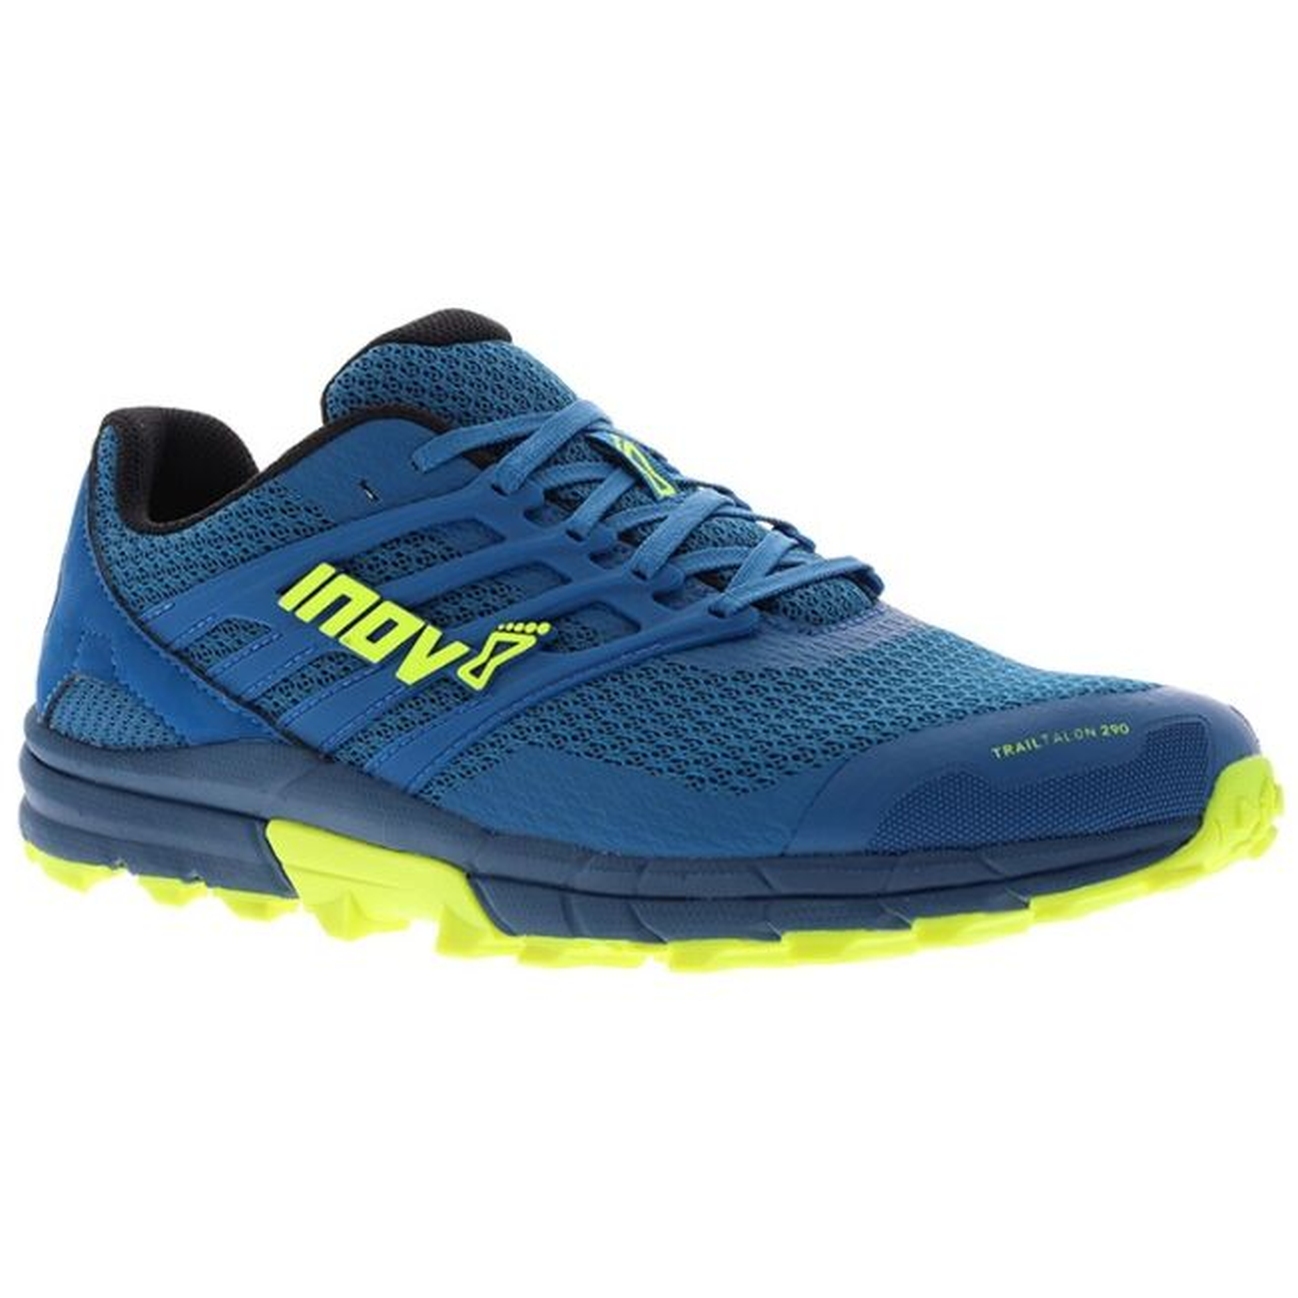 Produktbild von Inov-8 Trailtalon 290 Trailrunning Schuhe - blau/navy/gelb